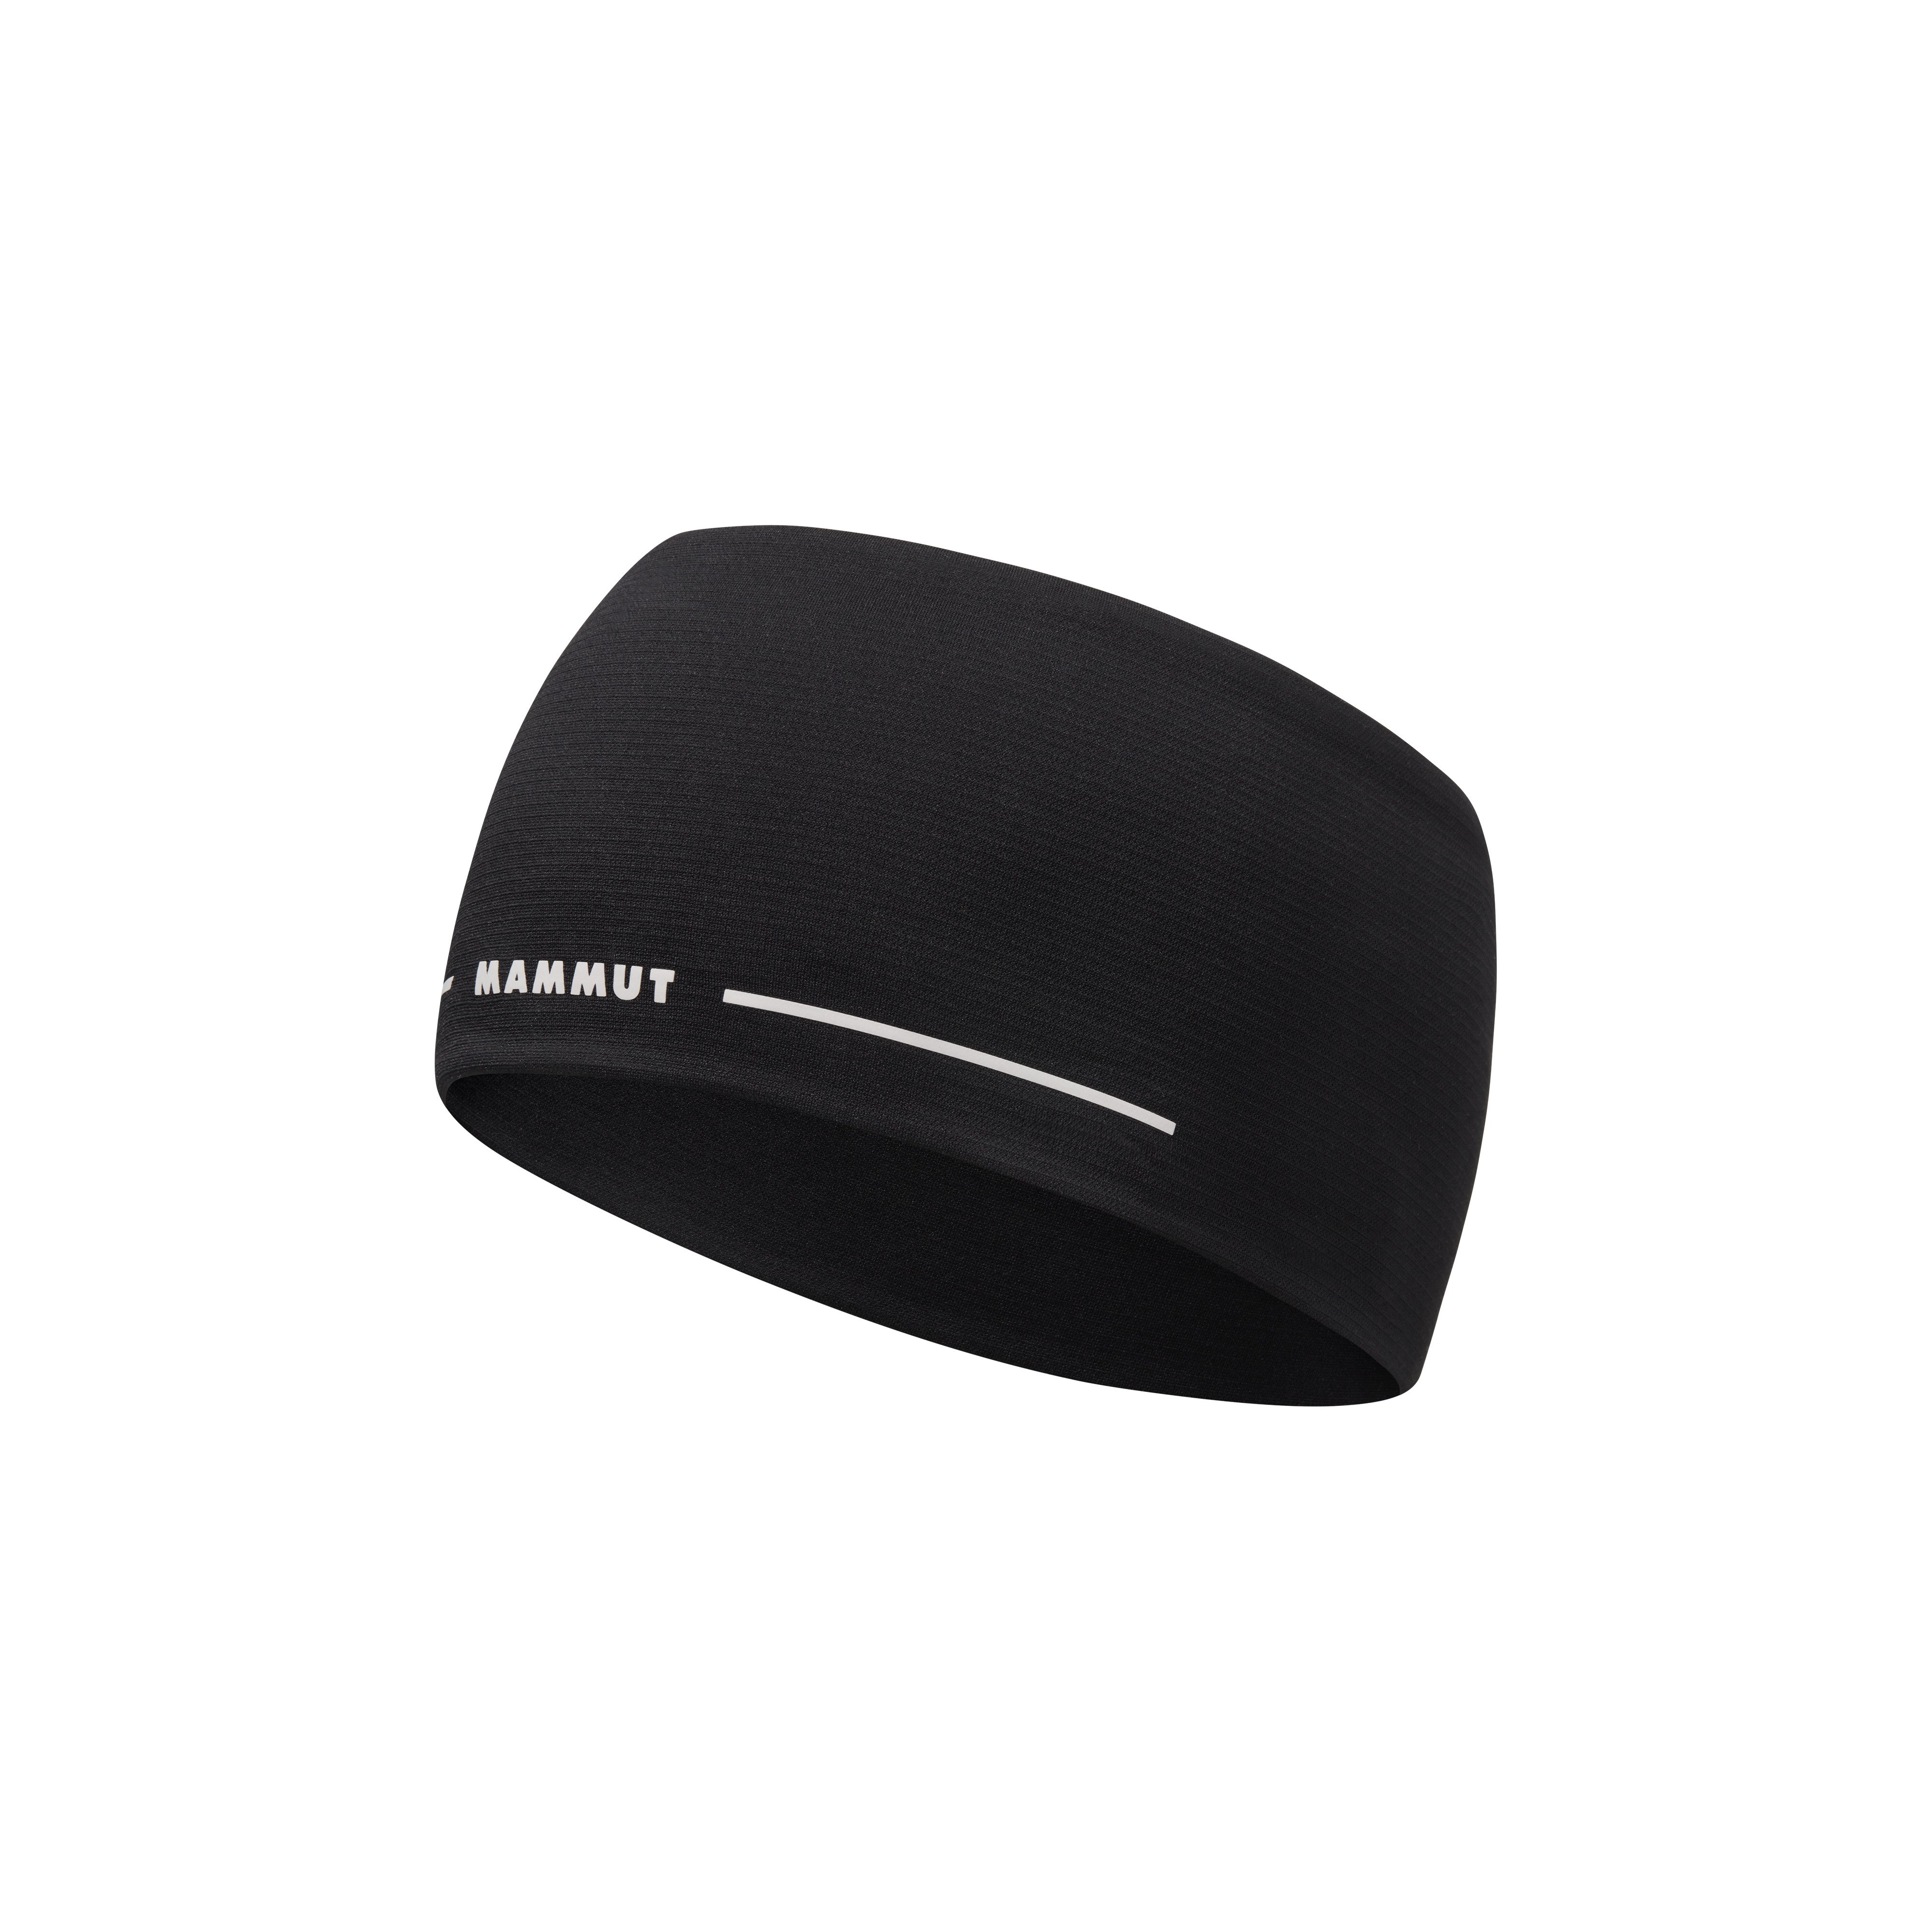 Aenergy Light Headband - black, one size product image